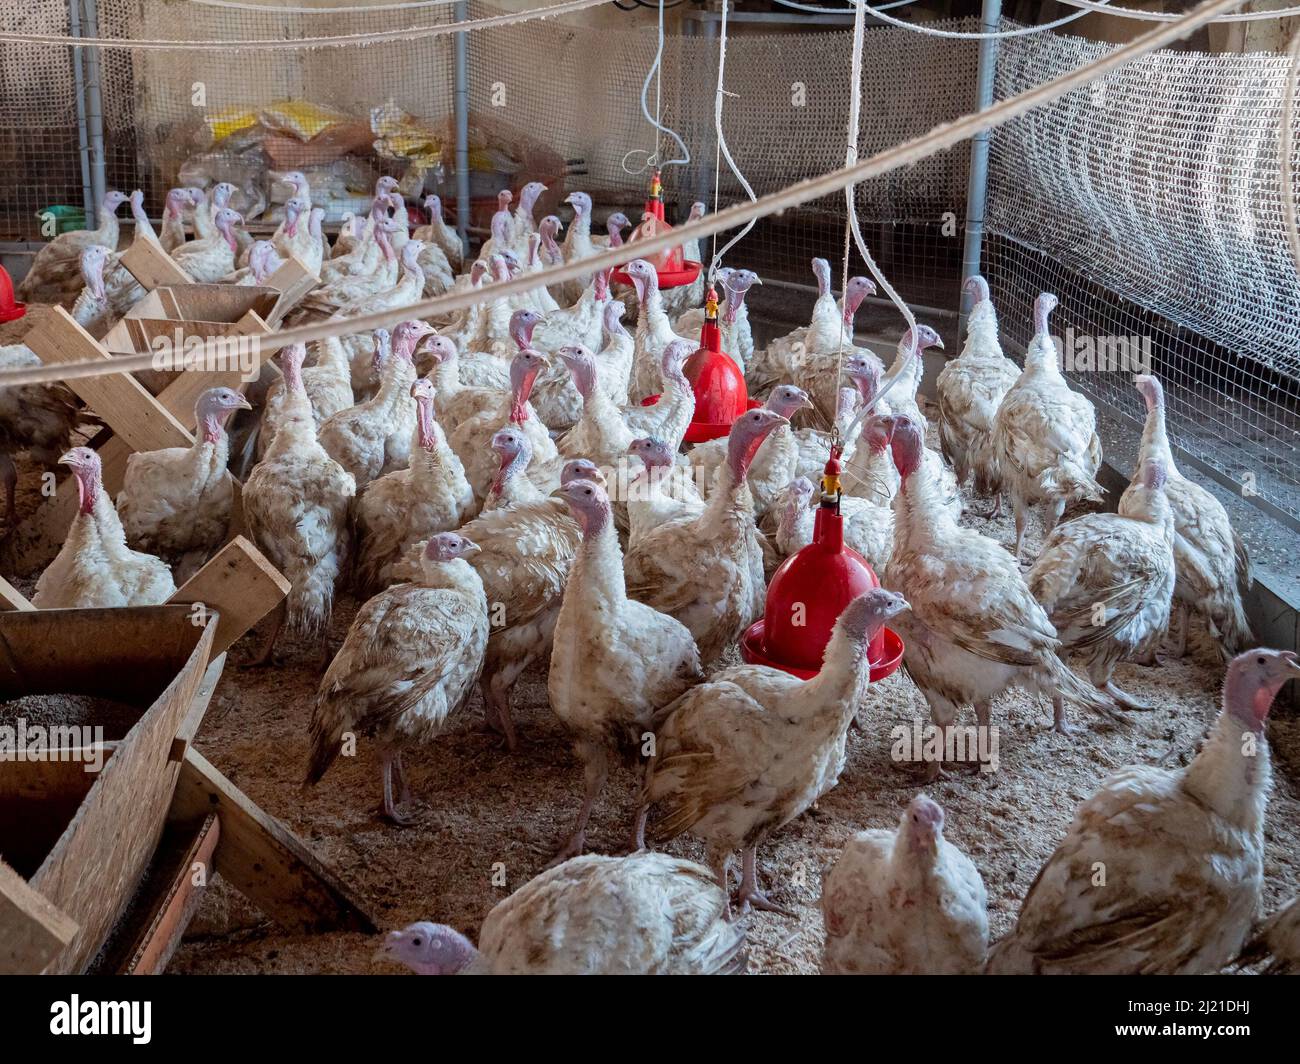 Turquía en una granja, la cría de pavos. Cría de aves de corral Foto de stock